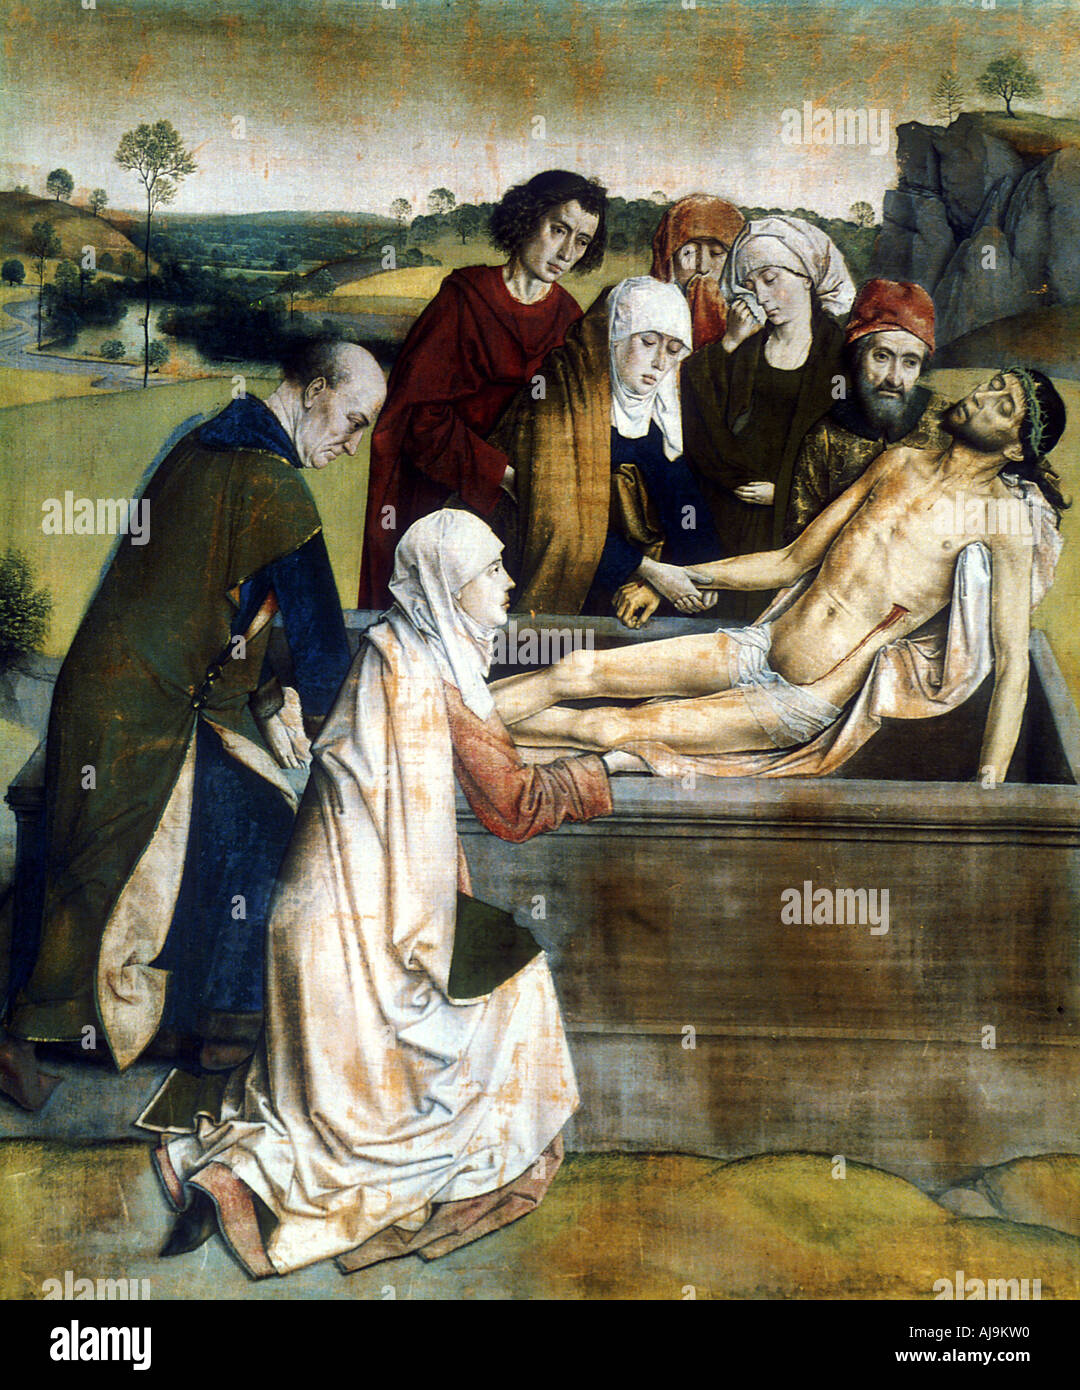 'L' di tumulazione, 1450s. Artista: combattimenti Dieric Foto Stock